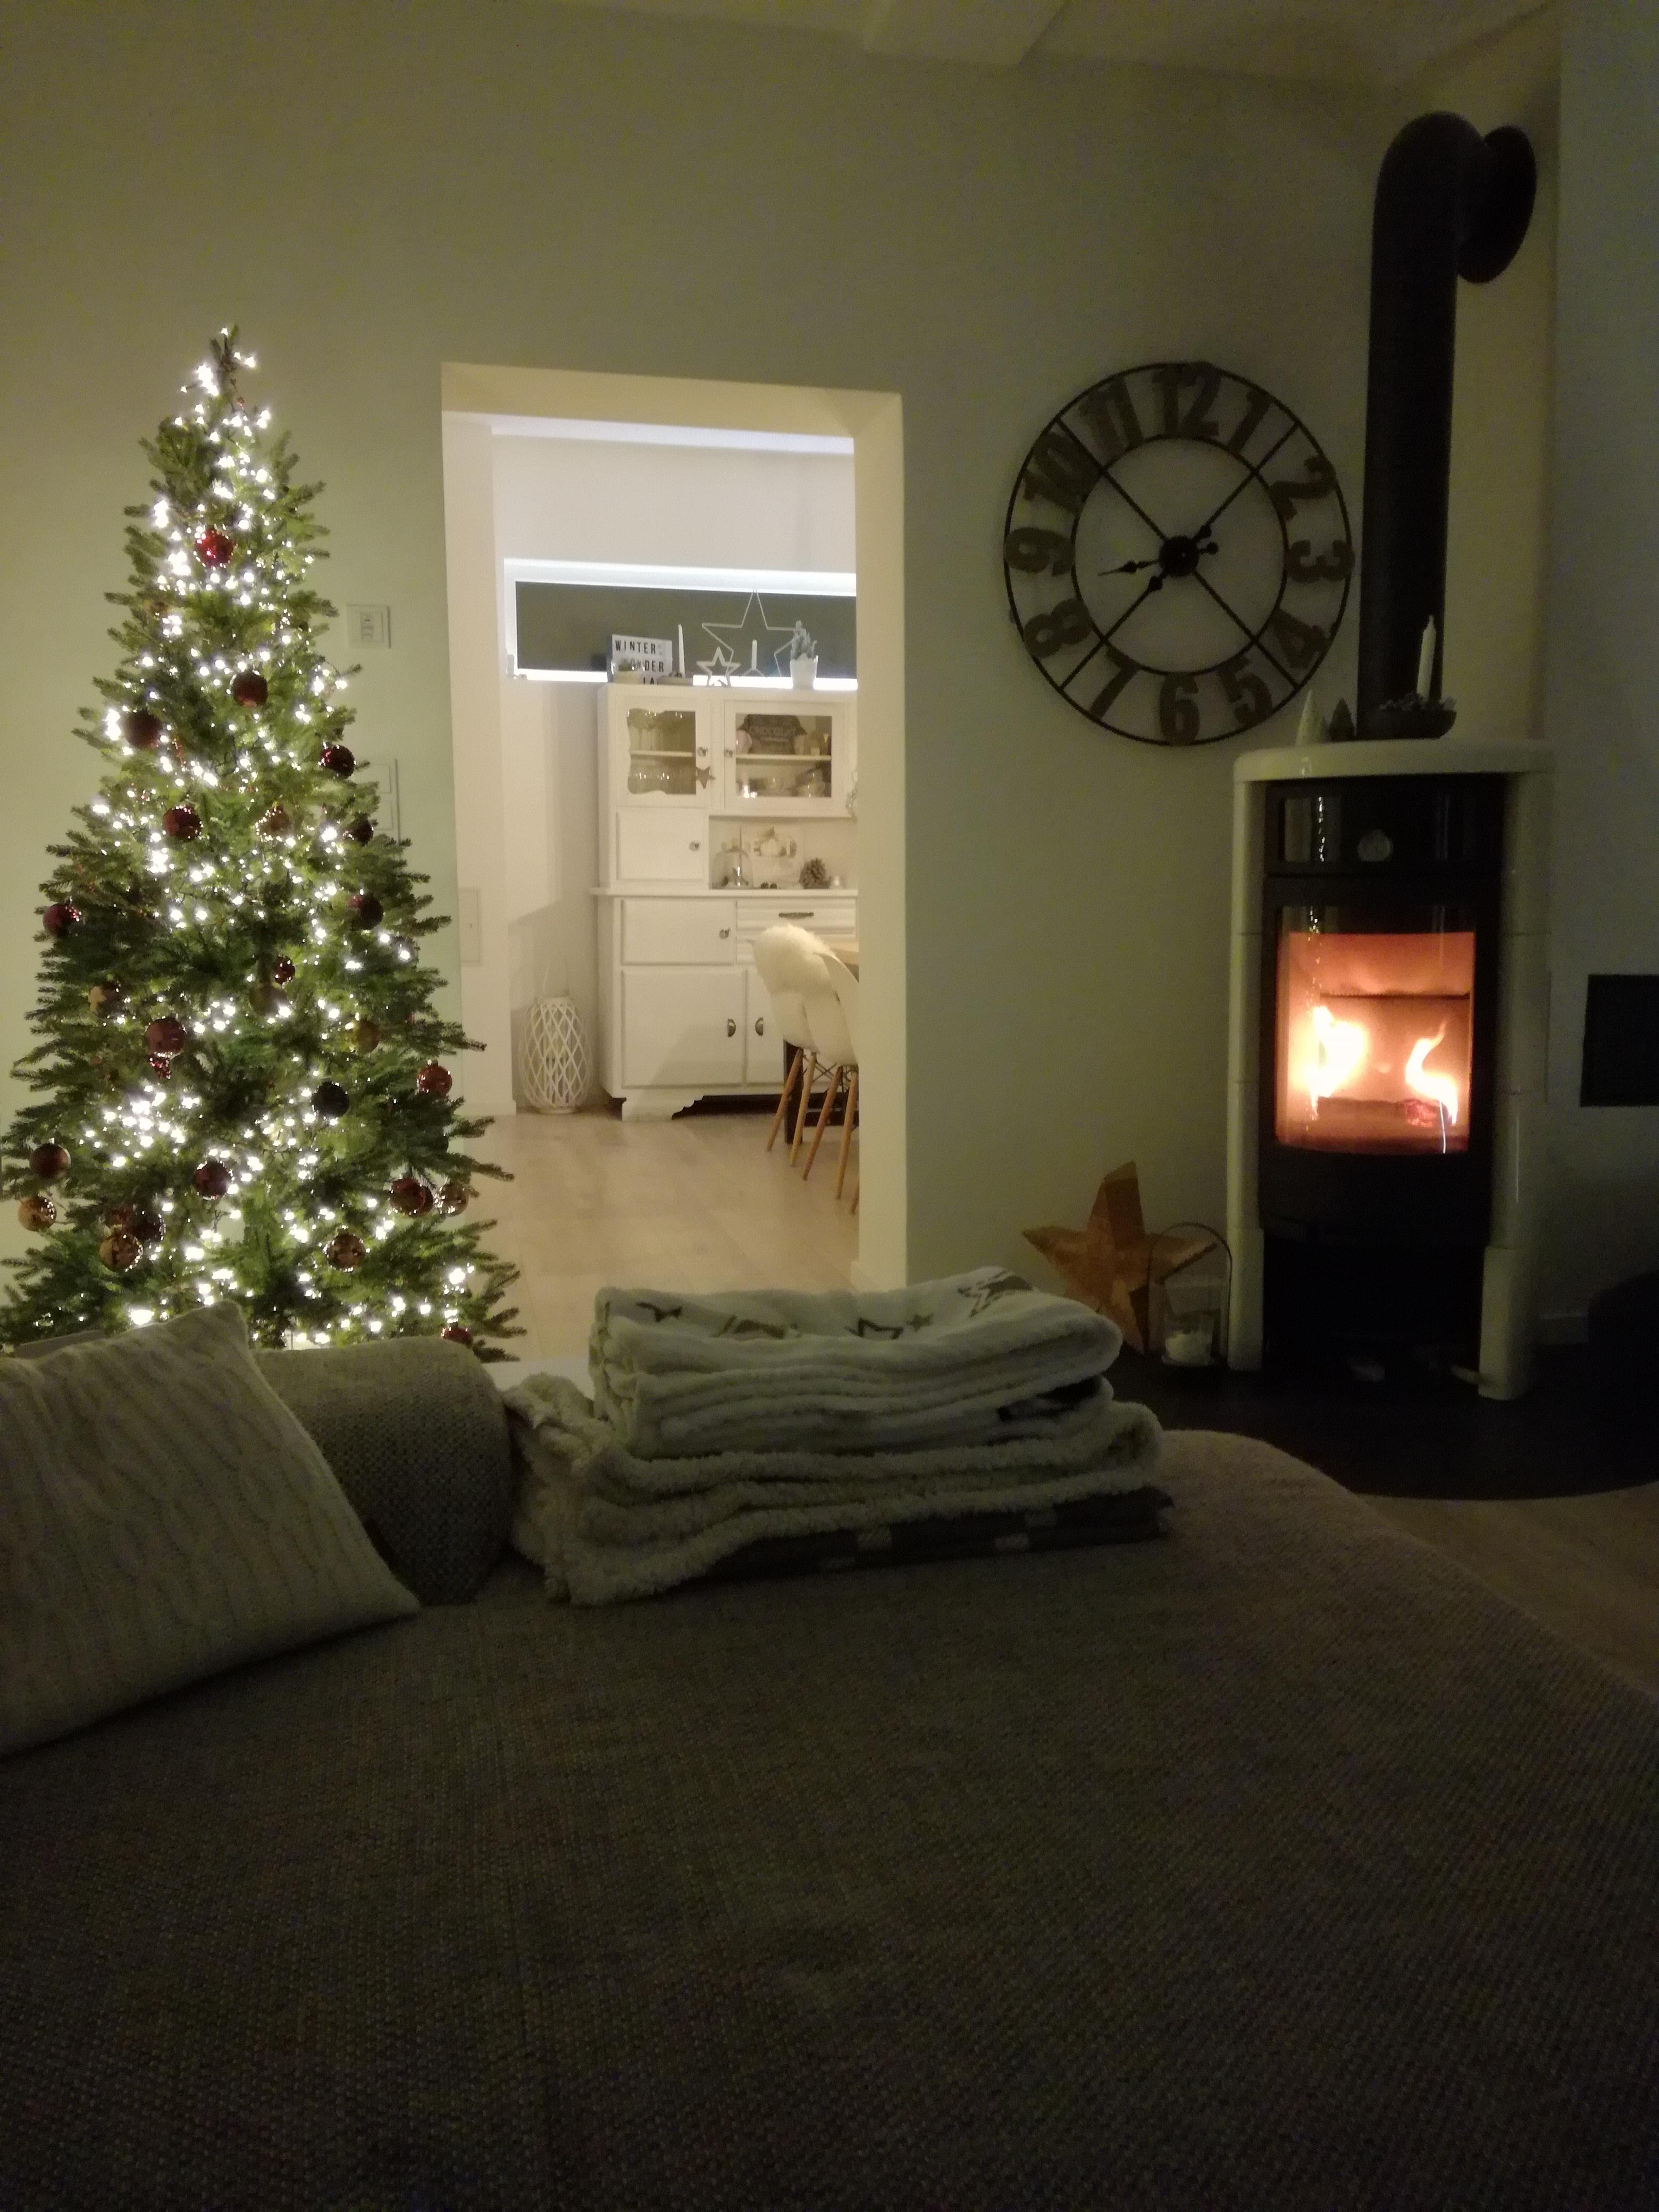 Die Ruhe kehrt ein...

#Wohnzimmer #Kamin #Contura #Weihnachtsbaum #altesbuffet #ruhigerabend #advent